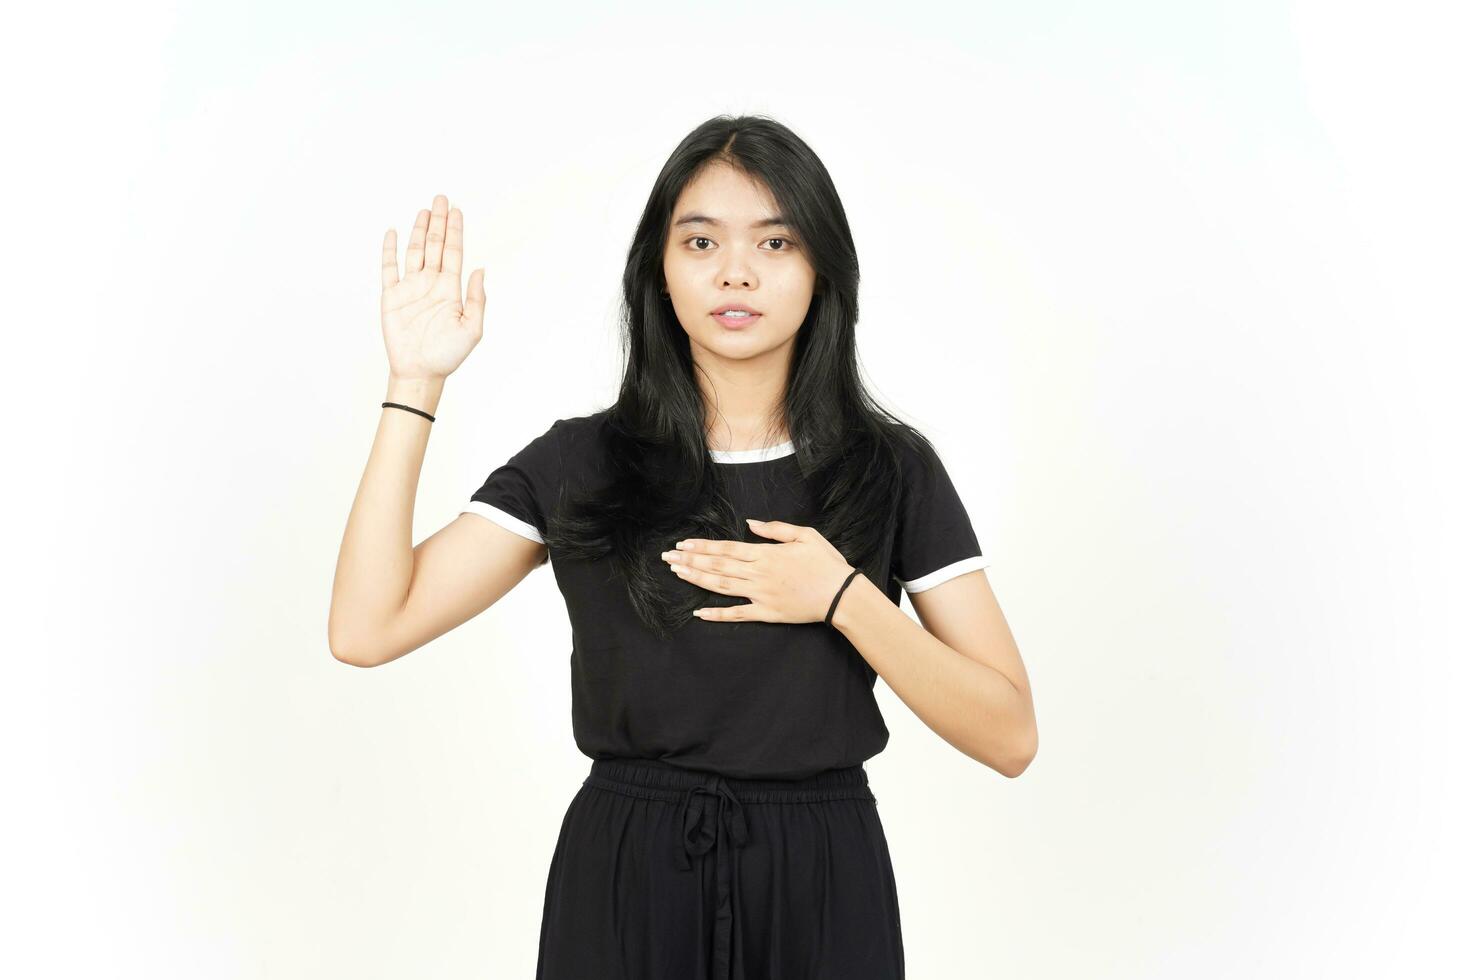 schwörende Geste, machen Sie einen Eid der schönen asiatischen Frau, die auf weißem Hintergrund lokalisiert wird foto